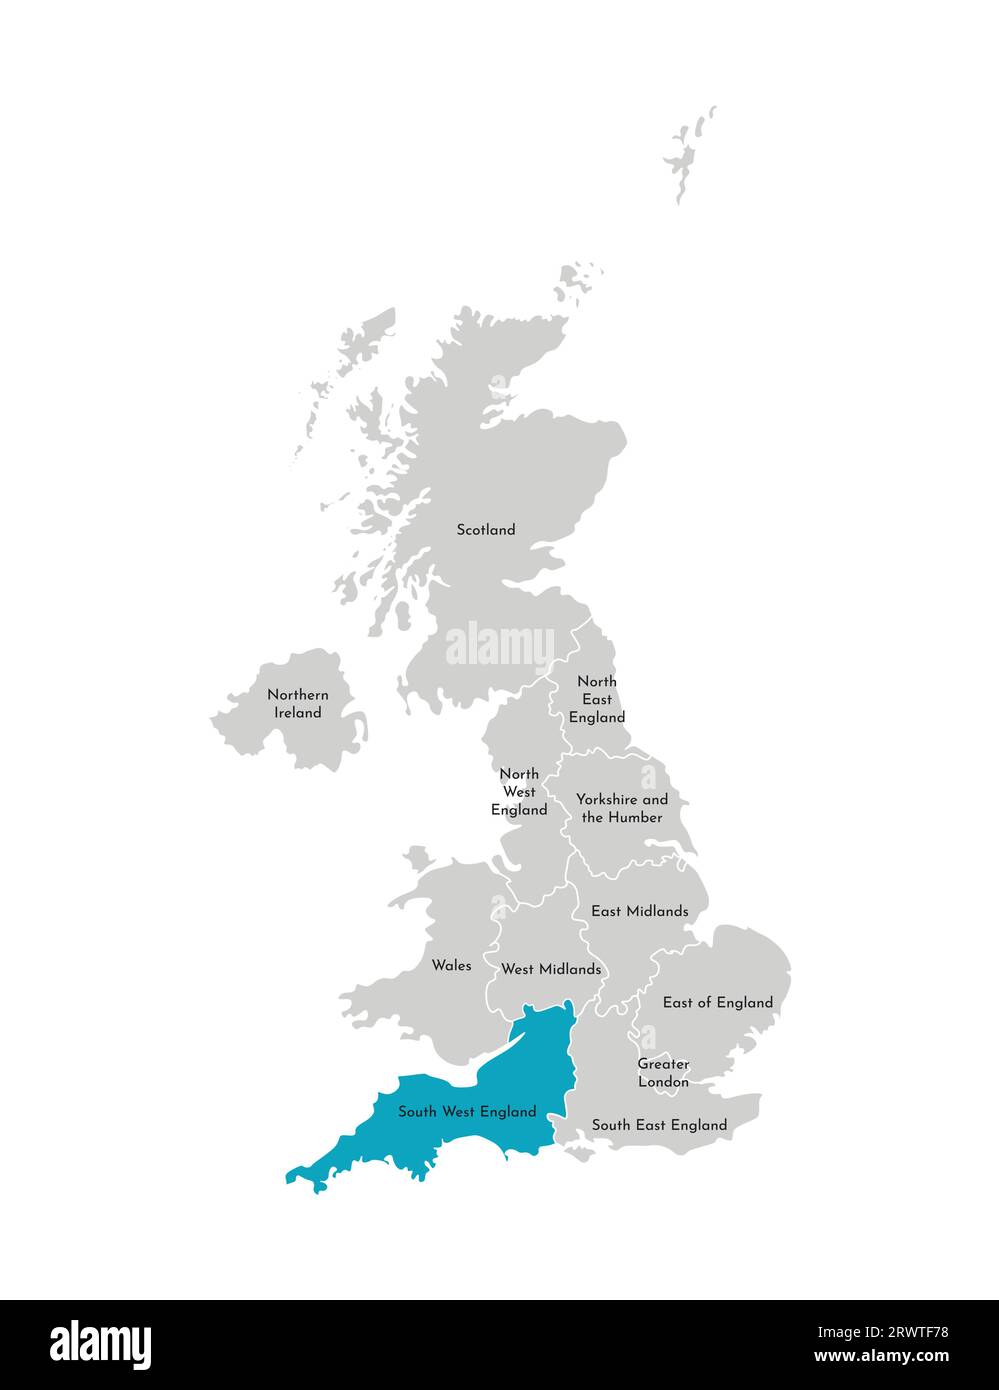 Illustration isolée vectorielle de la carte administrative simplifiée du Royaume-Uni (UK). Forme bleue du sud-ouest de l'Angleterre. Bordures et noms du r Illustration de Vecteur